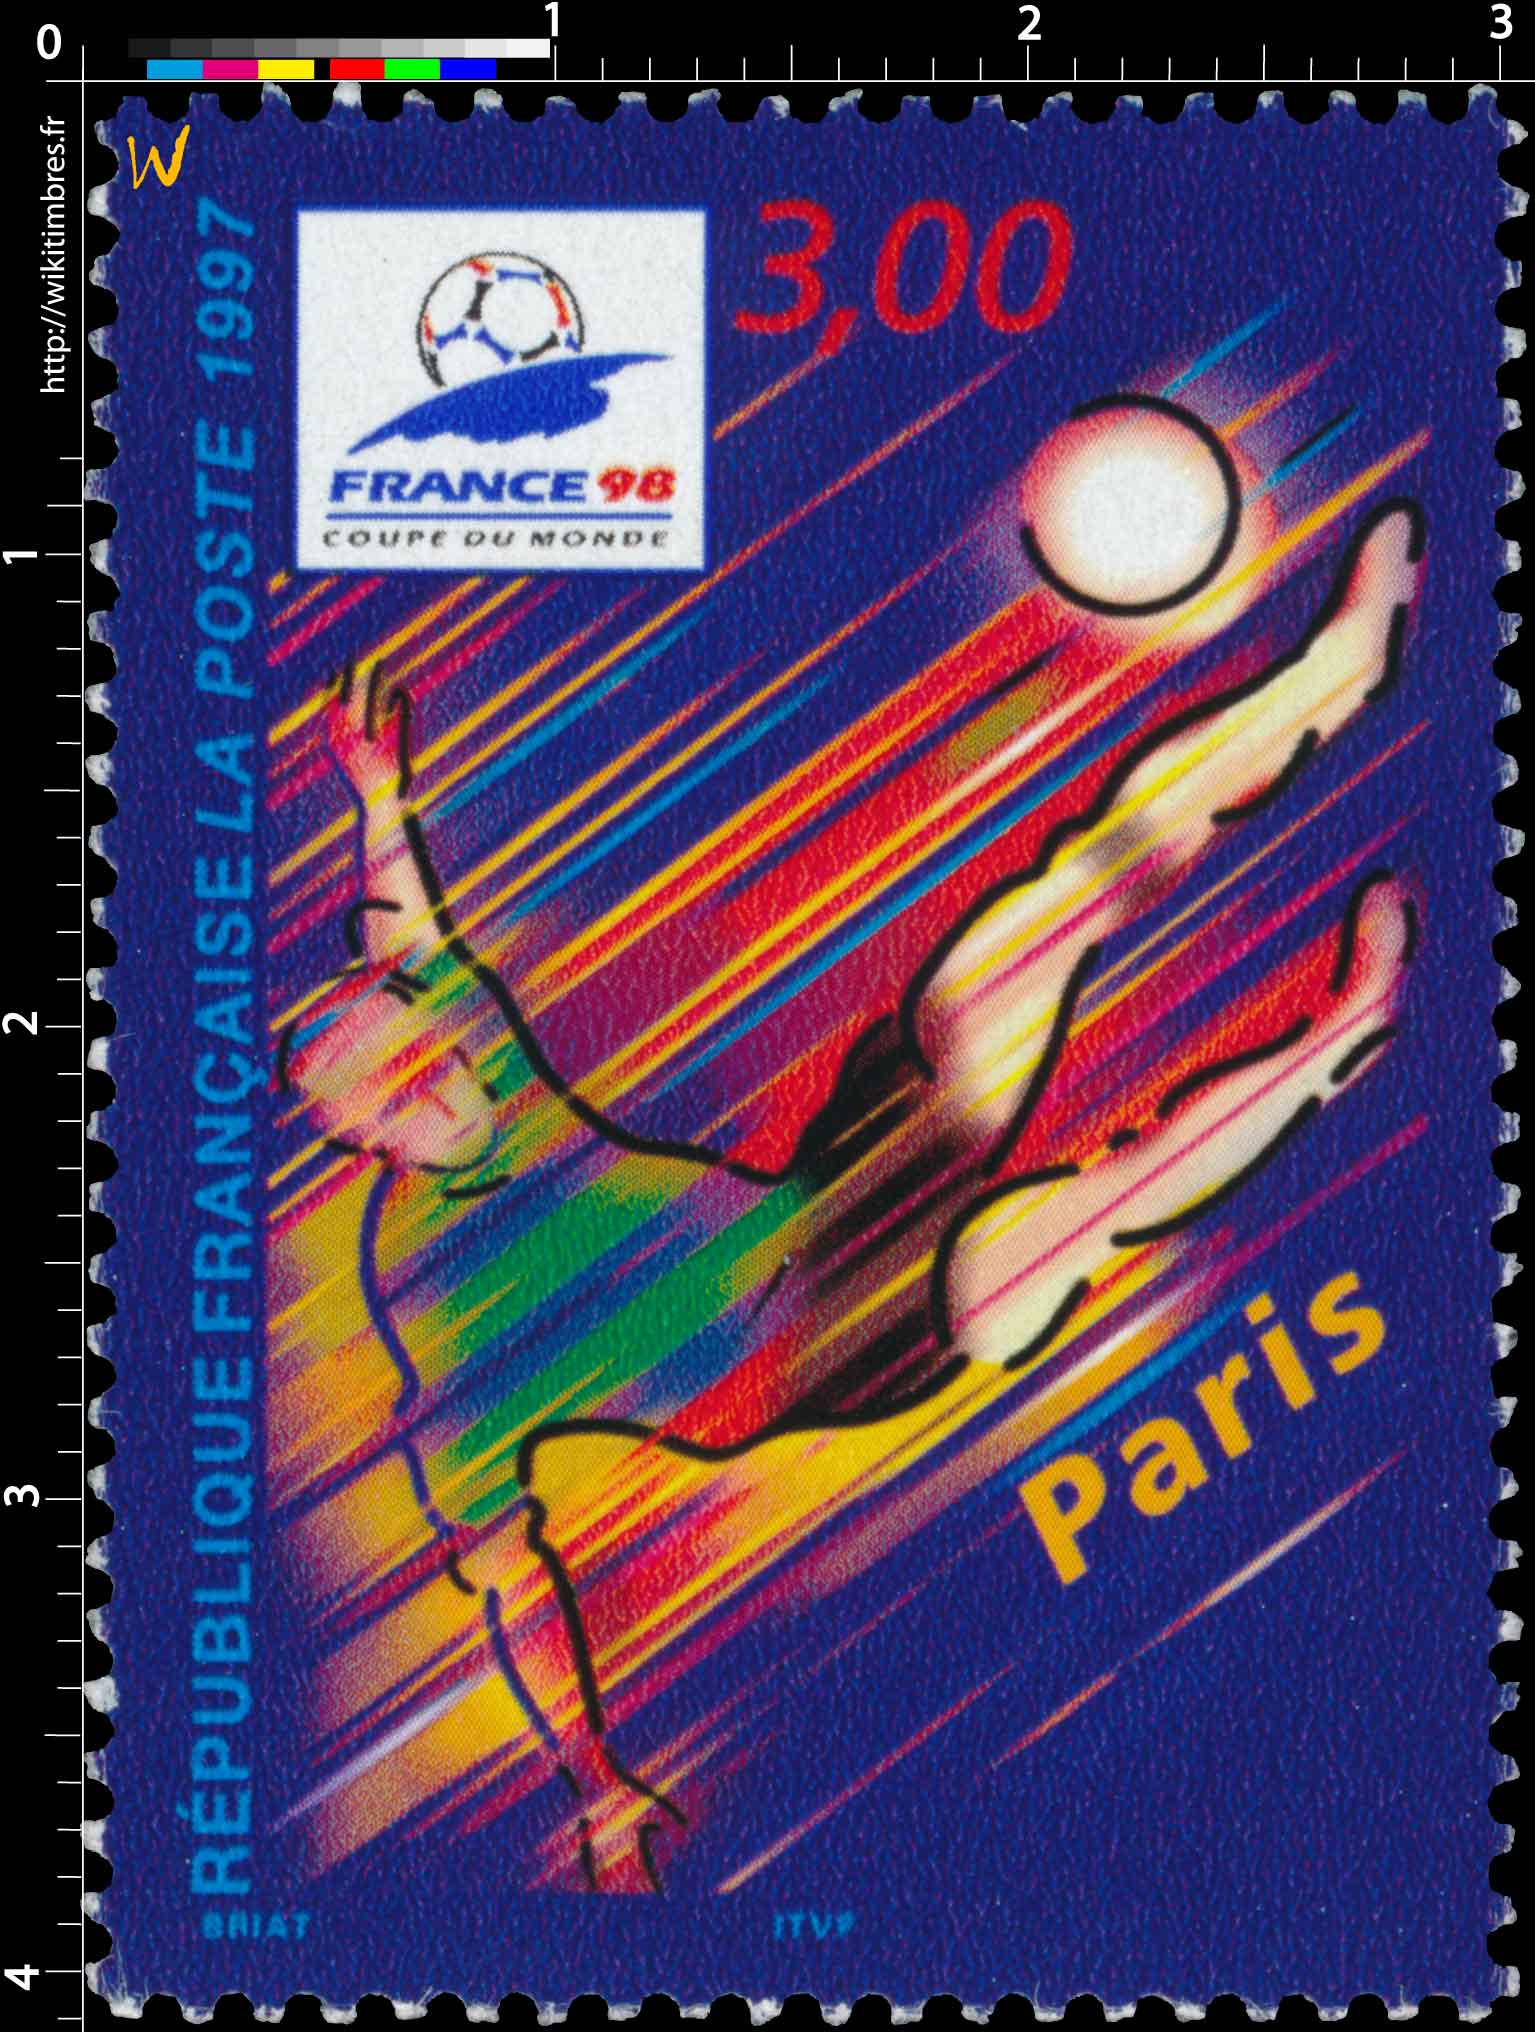 1997 FRANCE 98 COUPE DU MONDE Paris